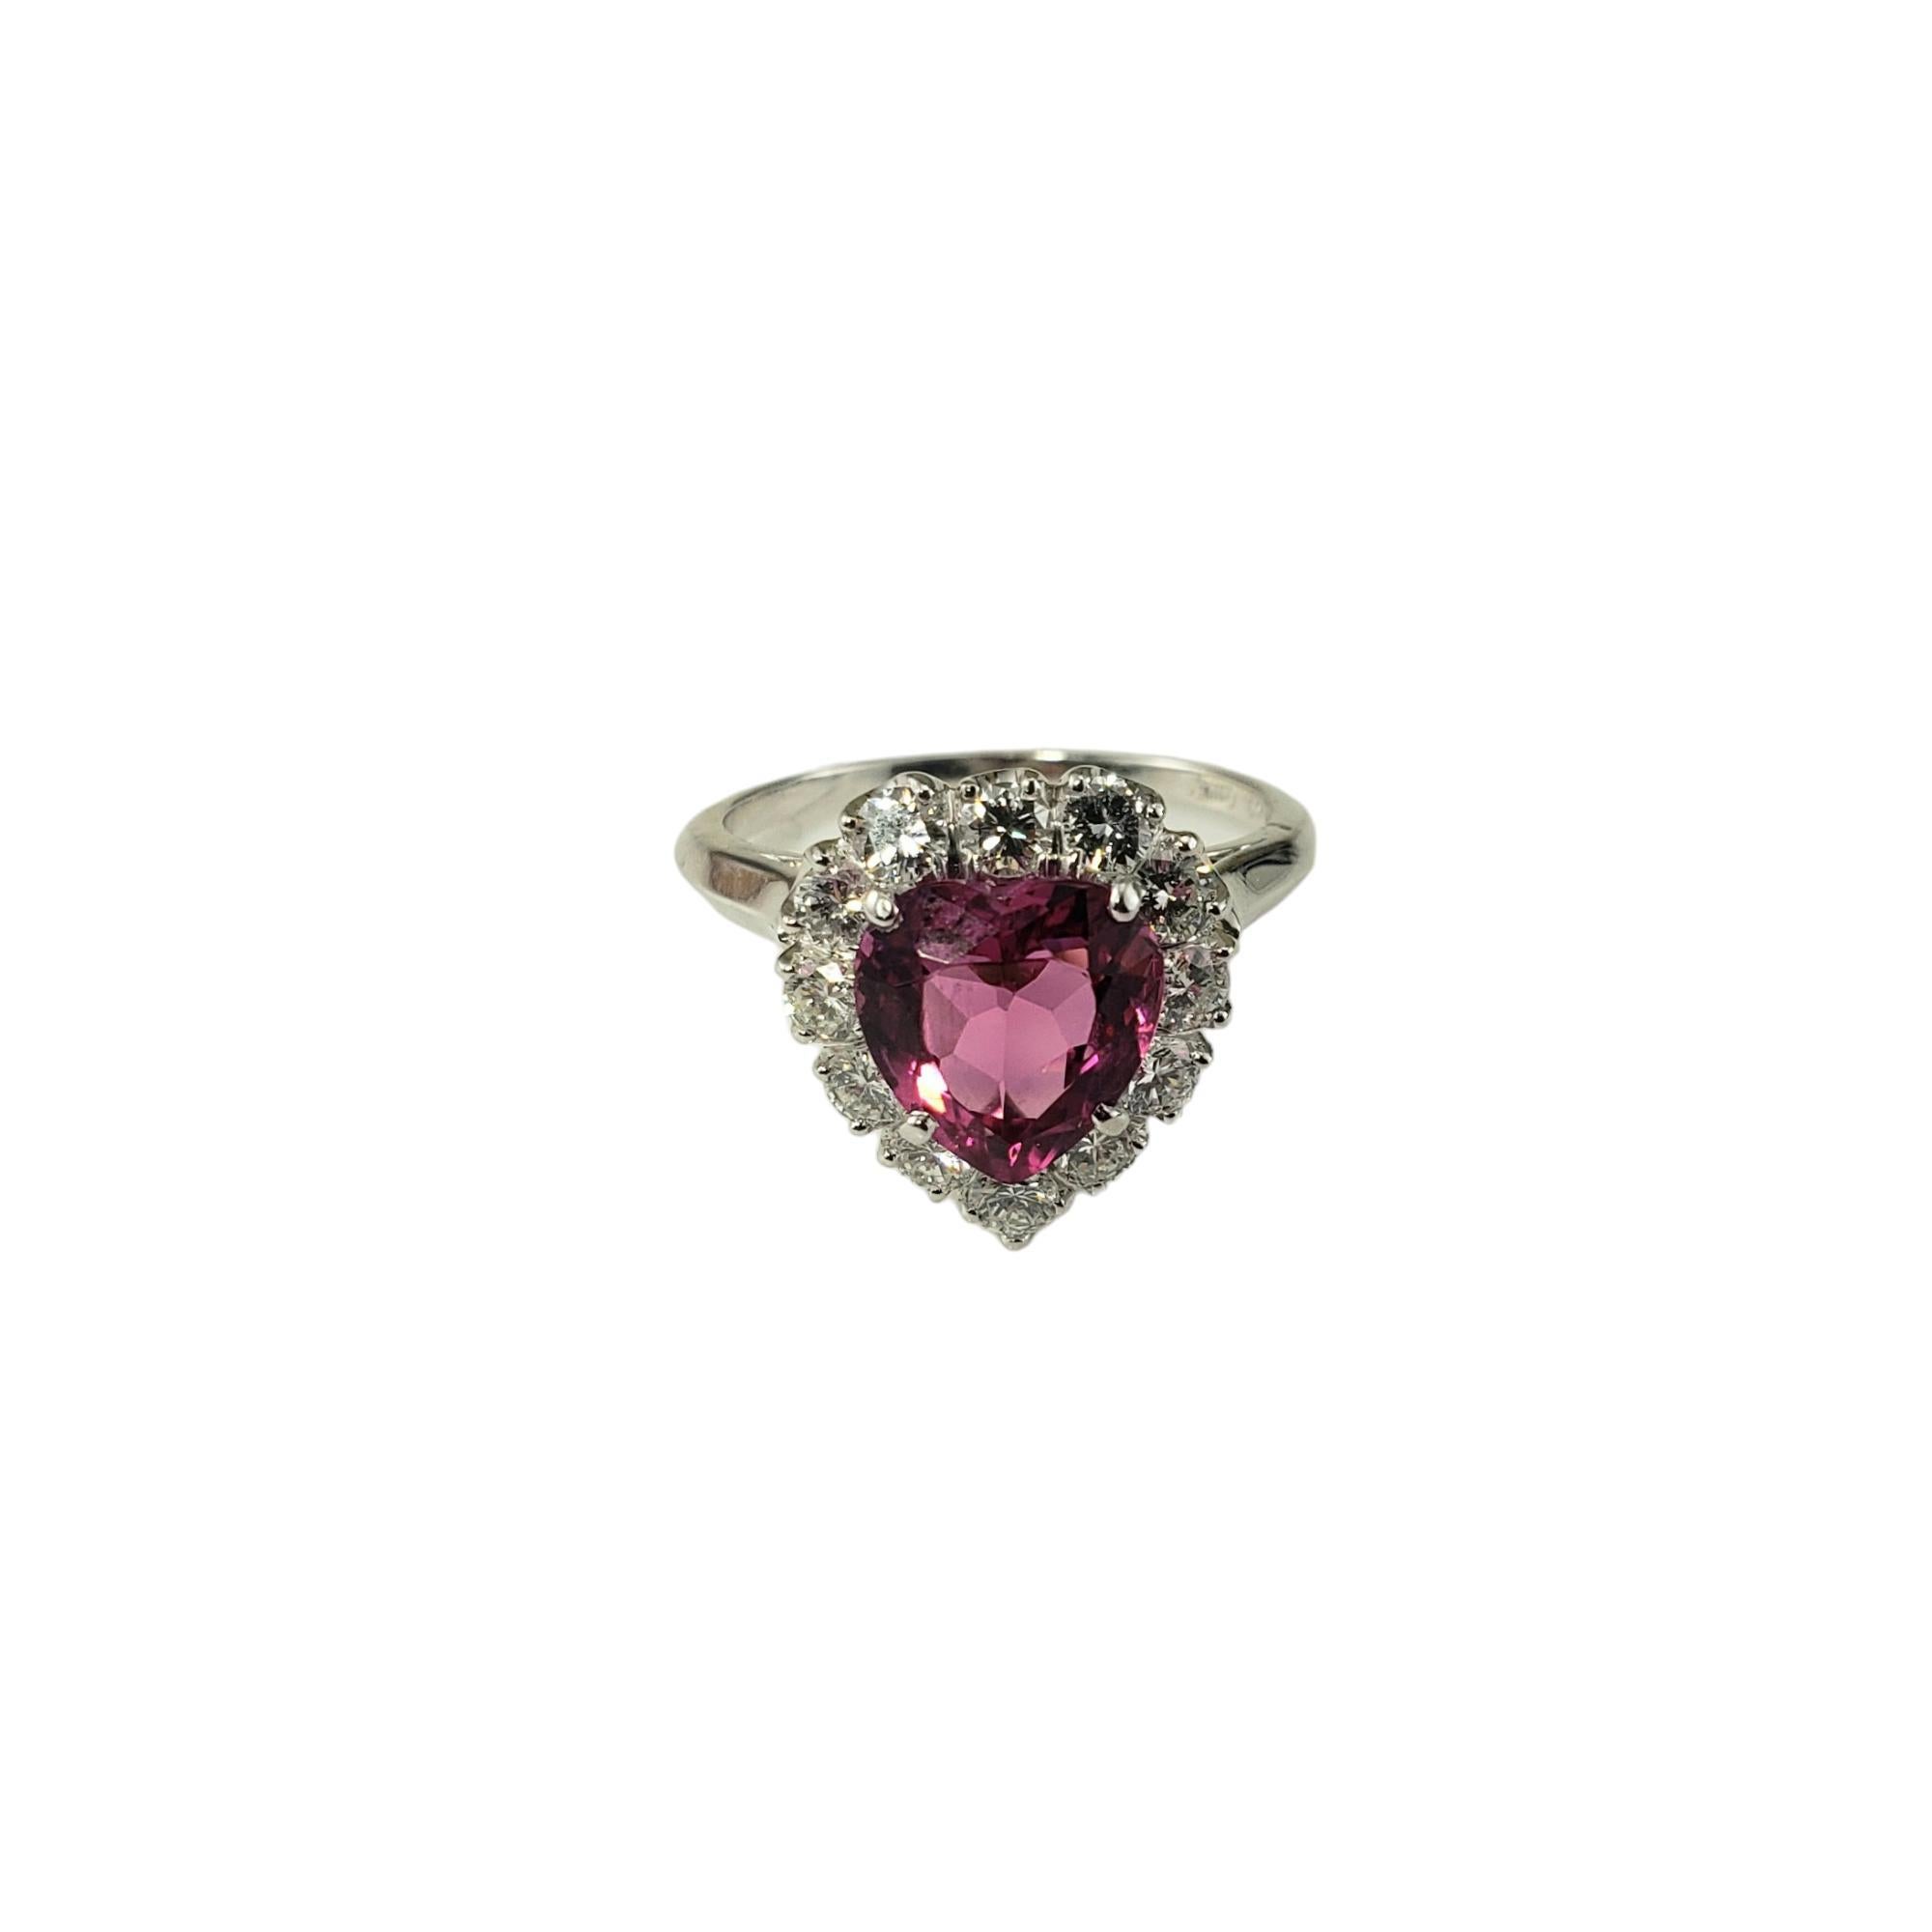 Platin Rosa Turmalin und Diamant Ring Größe 5,75 JAGi zertifiziert-

Dieser atemberaubende Ring besteht aus einem natürlichen rosa Turmalin in Herzform (8,5 mm x 8,0 mm), umgeben von 12 runden Diamanten im Brillantschliff, die in klassischem Platin